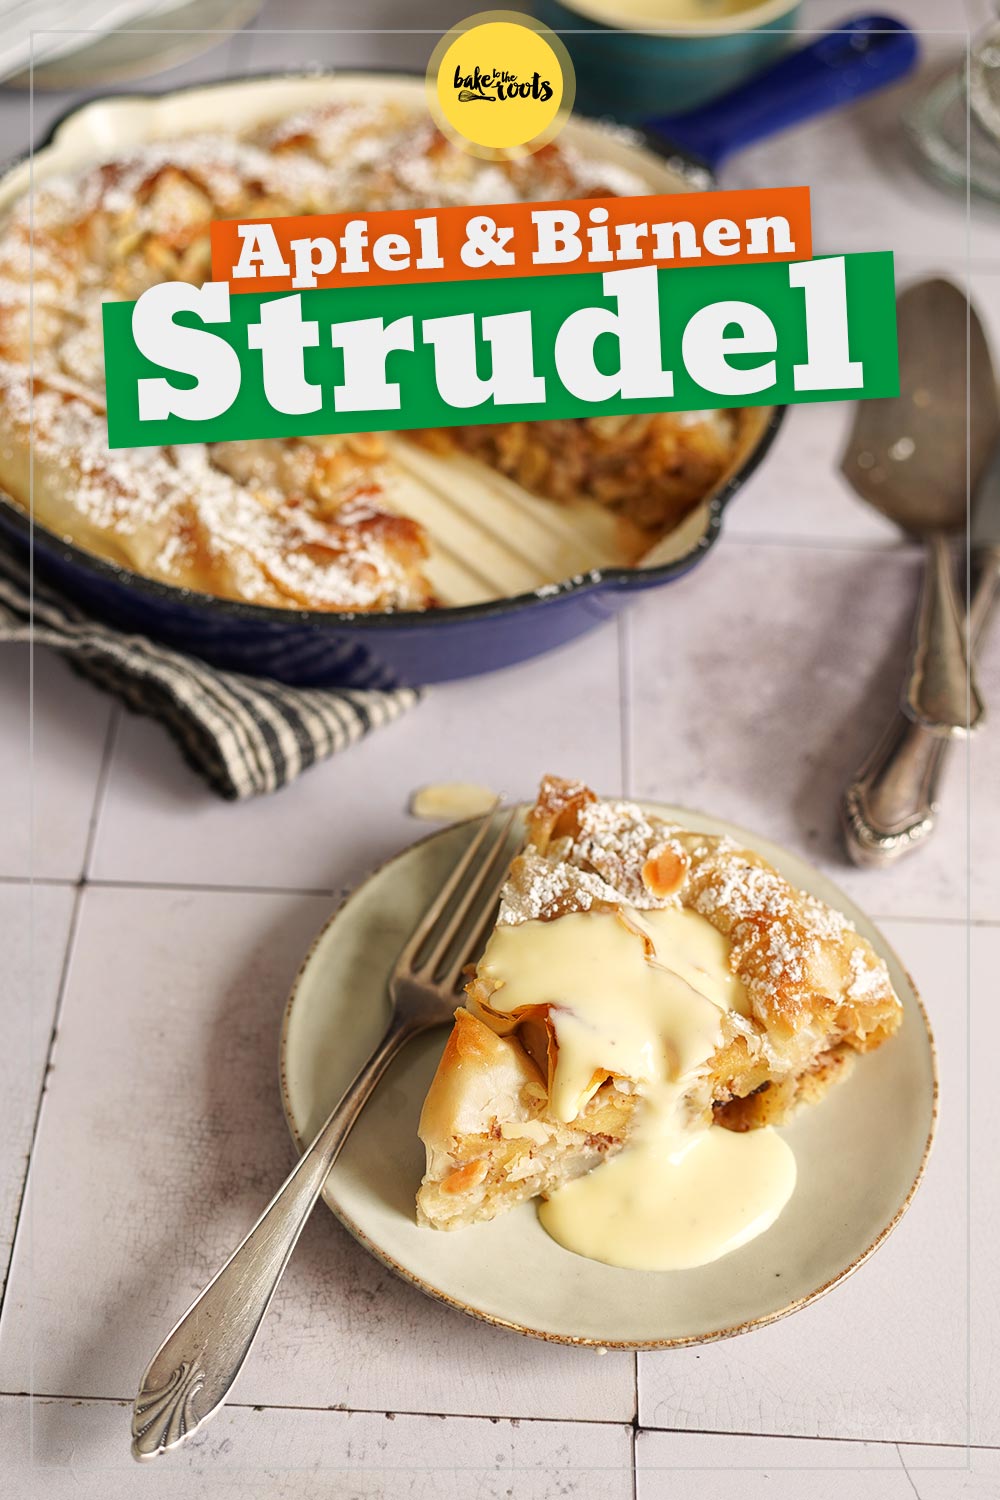 Apfel & Birnen Studelschnecke mit Filoteig | Bake to the roots